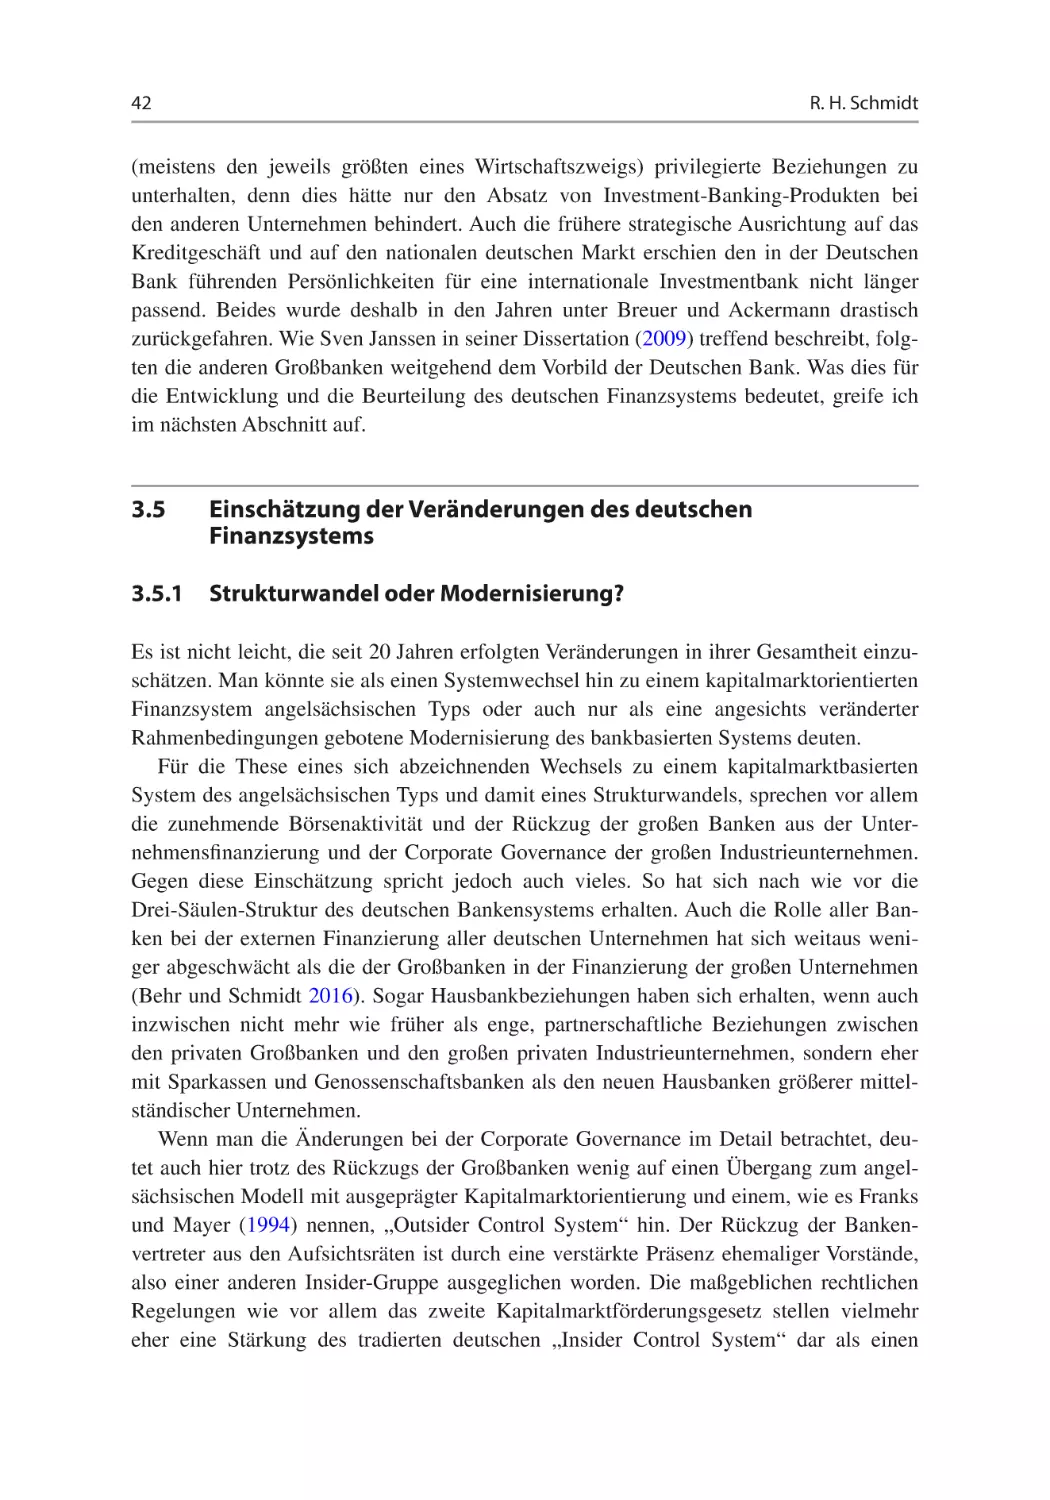 3.5	Einschätzung der Veränderungen des deutschen Finanzsystems
3.5.1	Strukturwandel oder Modernisierung?